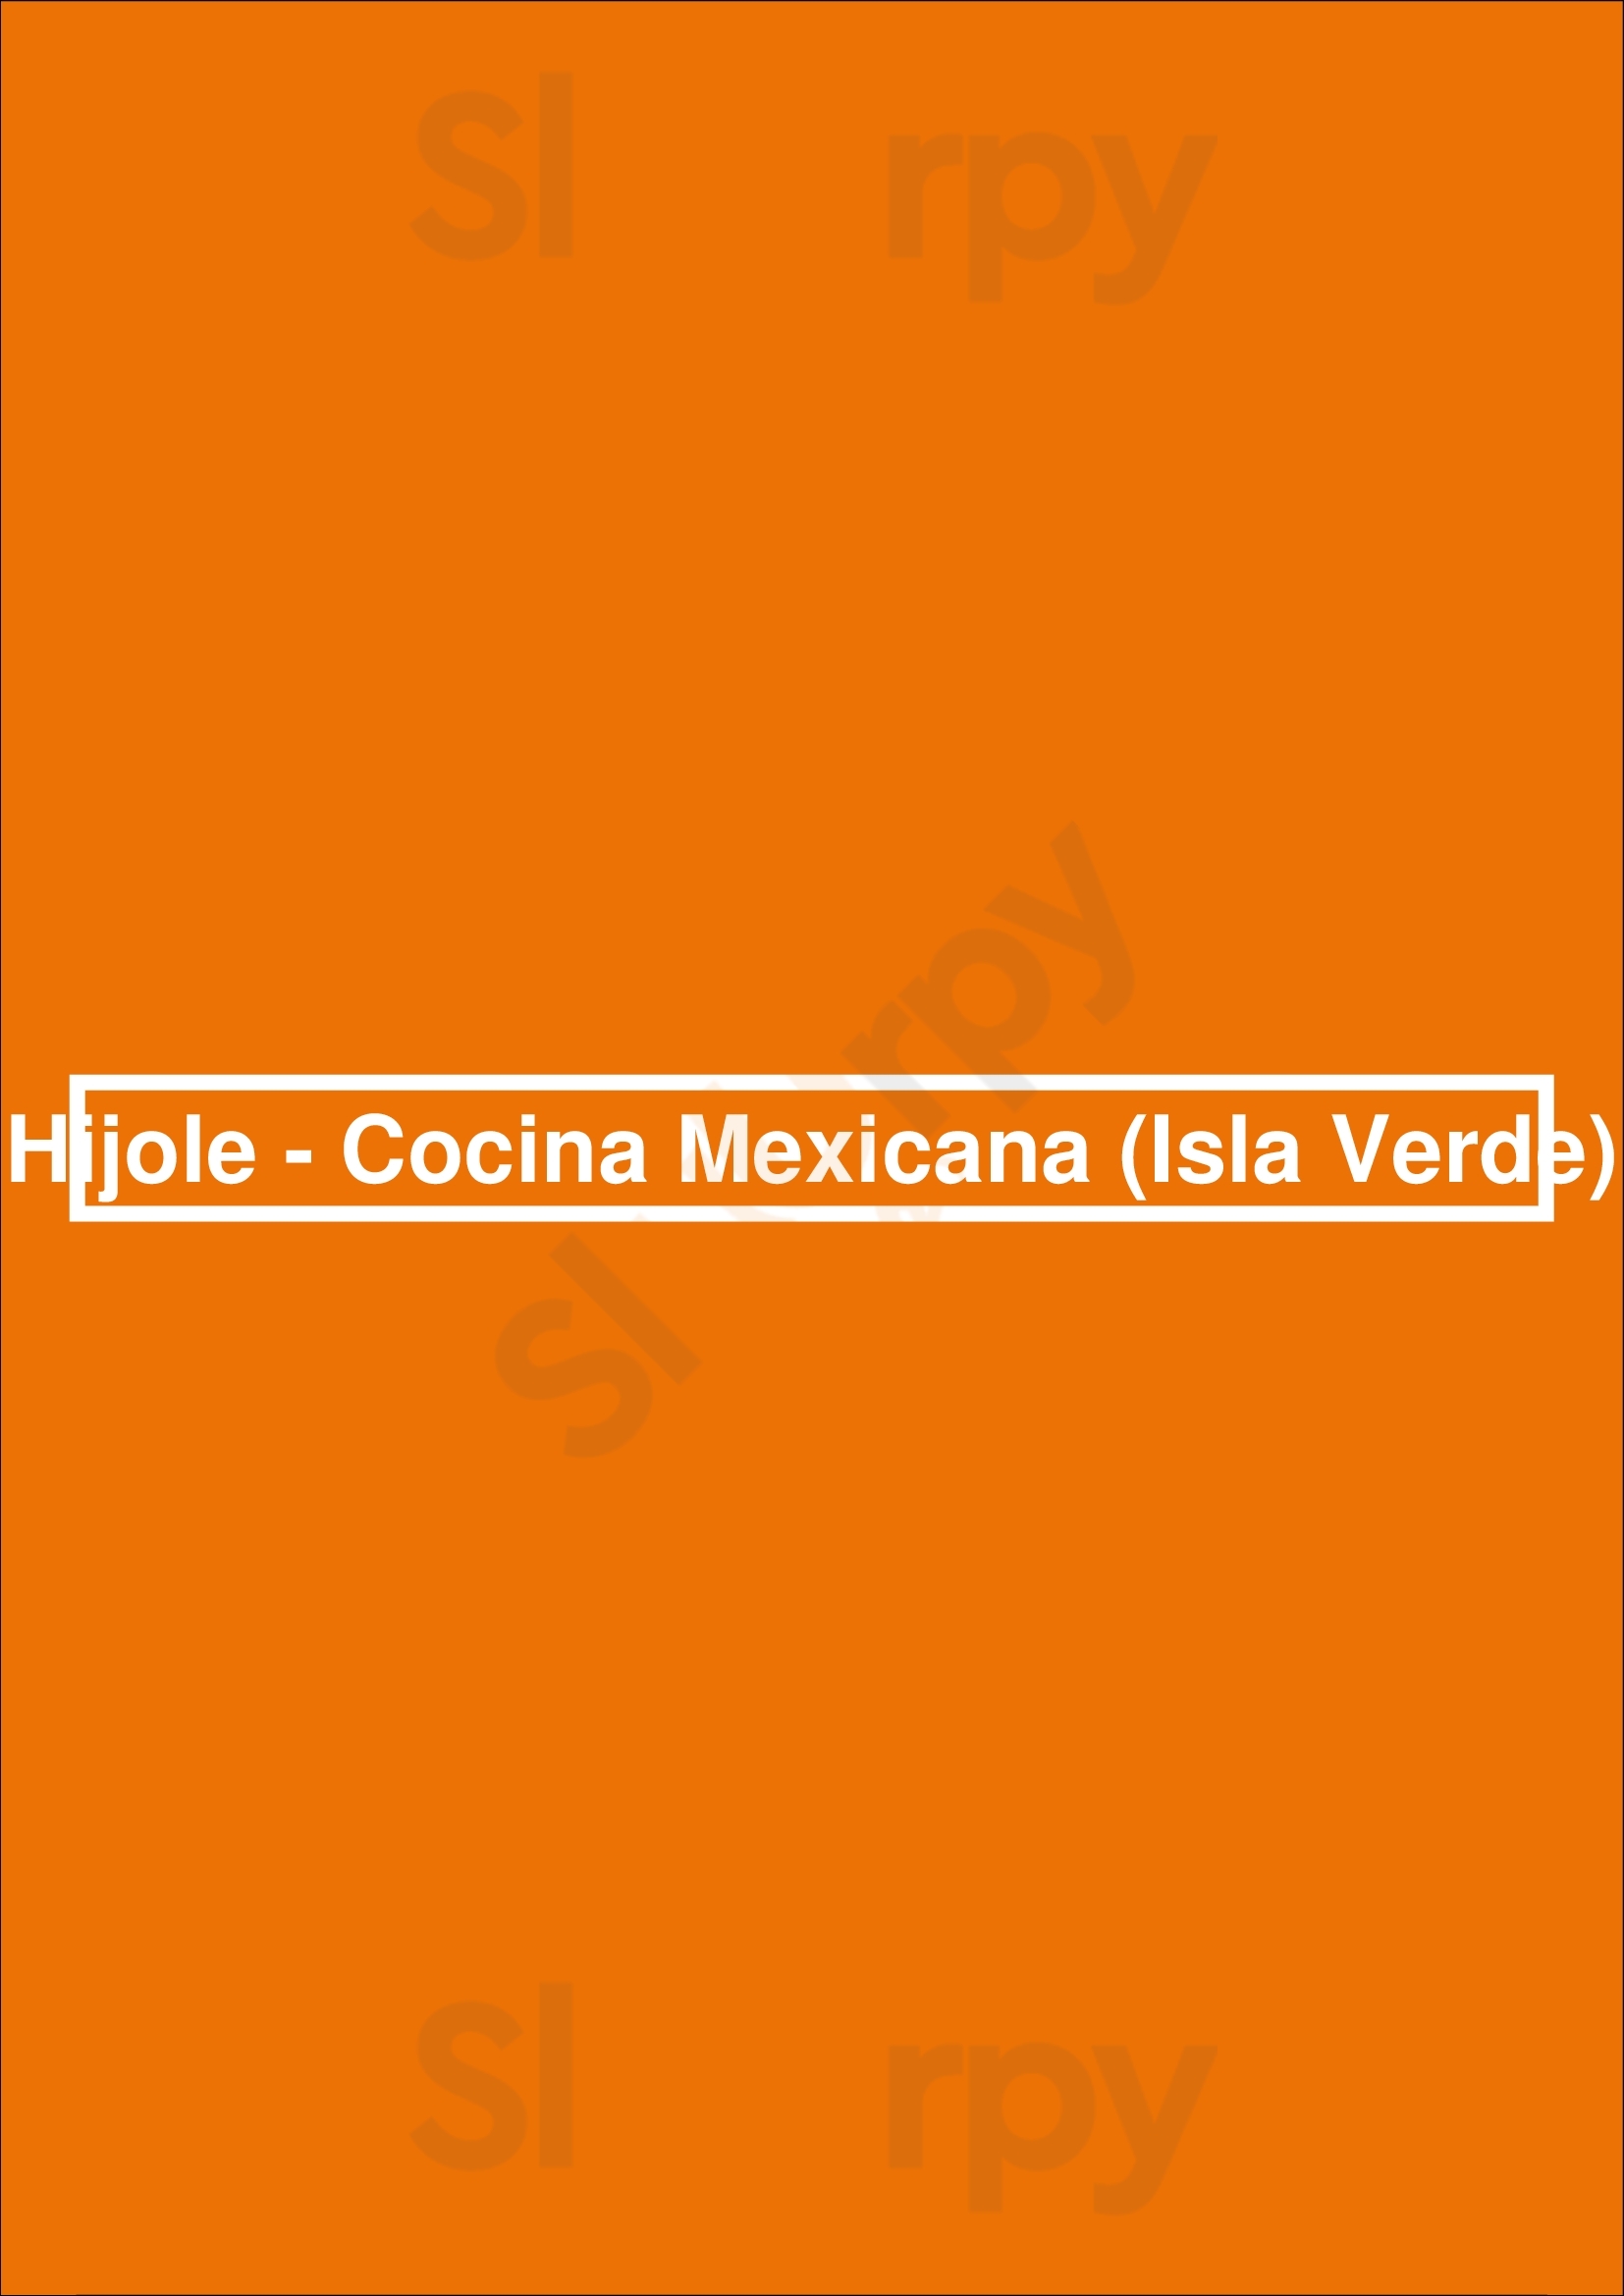 Hijole - Cocina Mexicana (isla Verde) Isla Verde Menu - 1